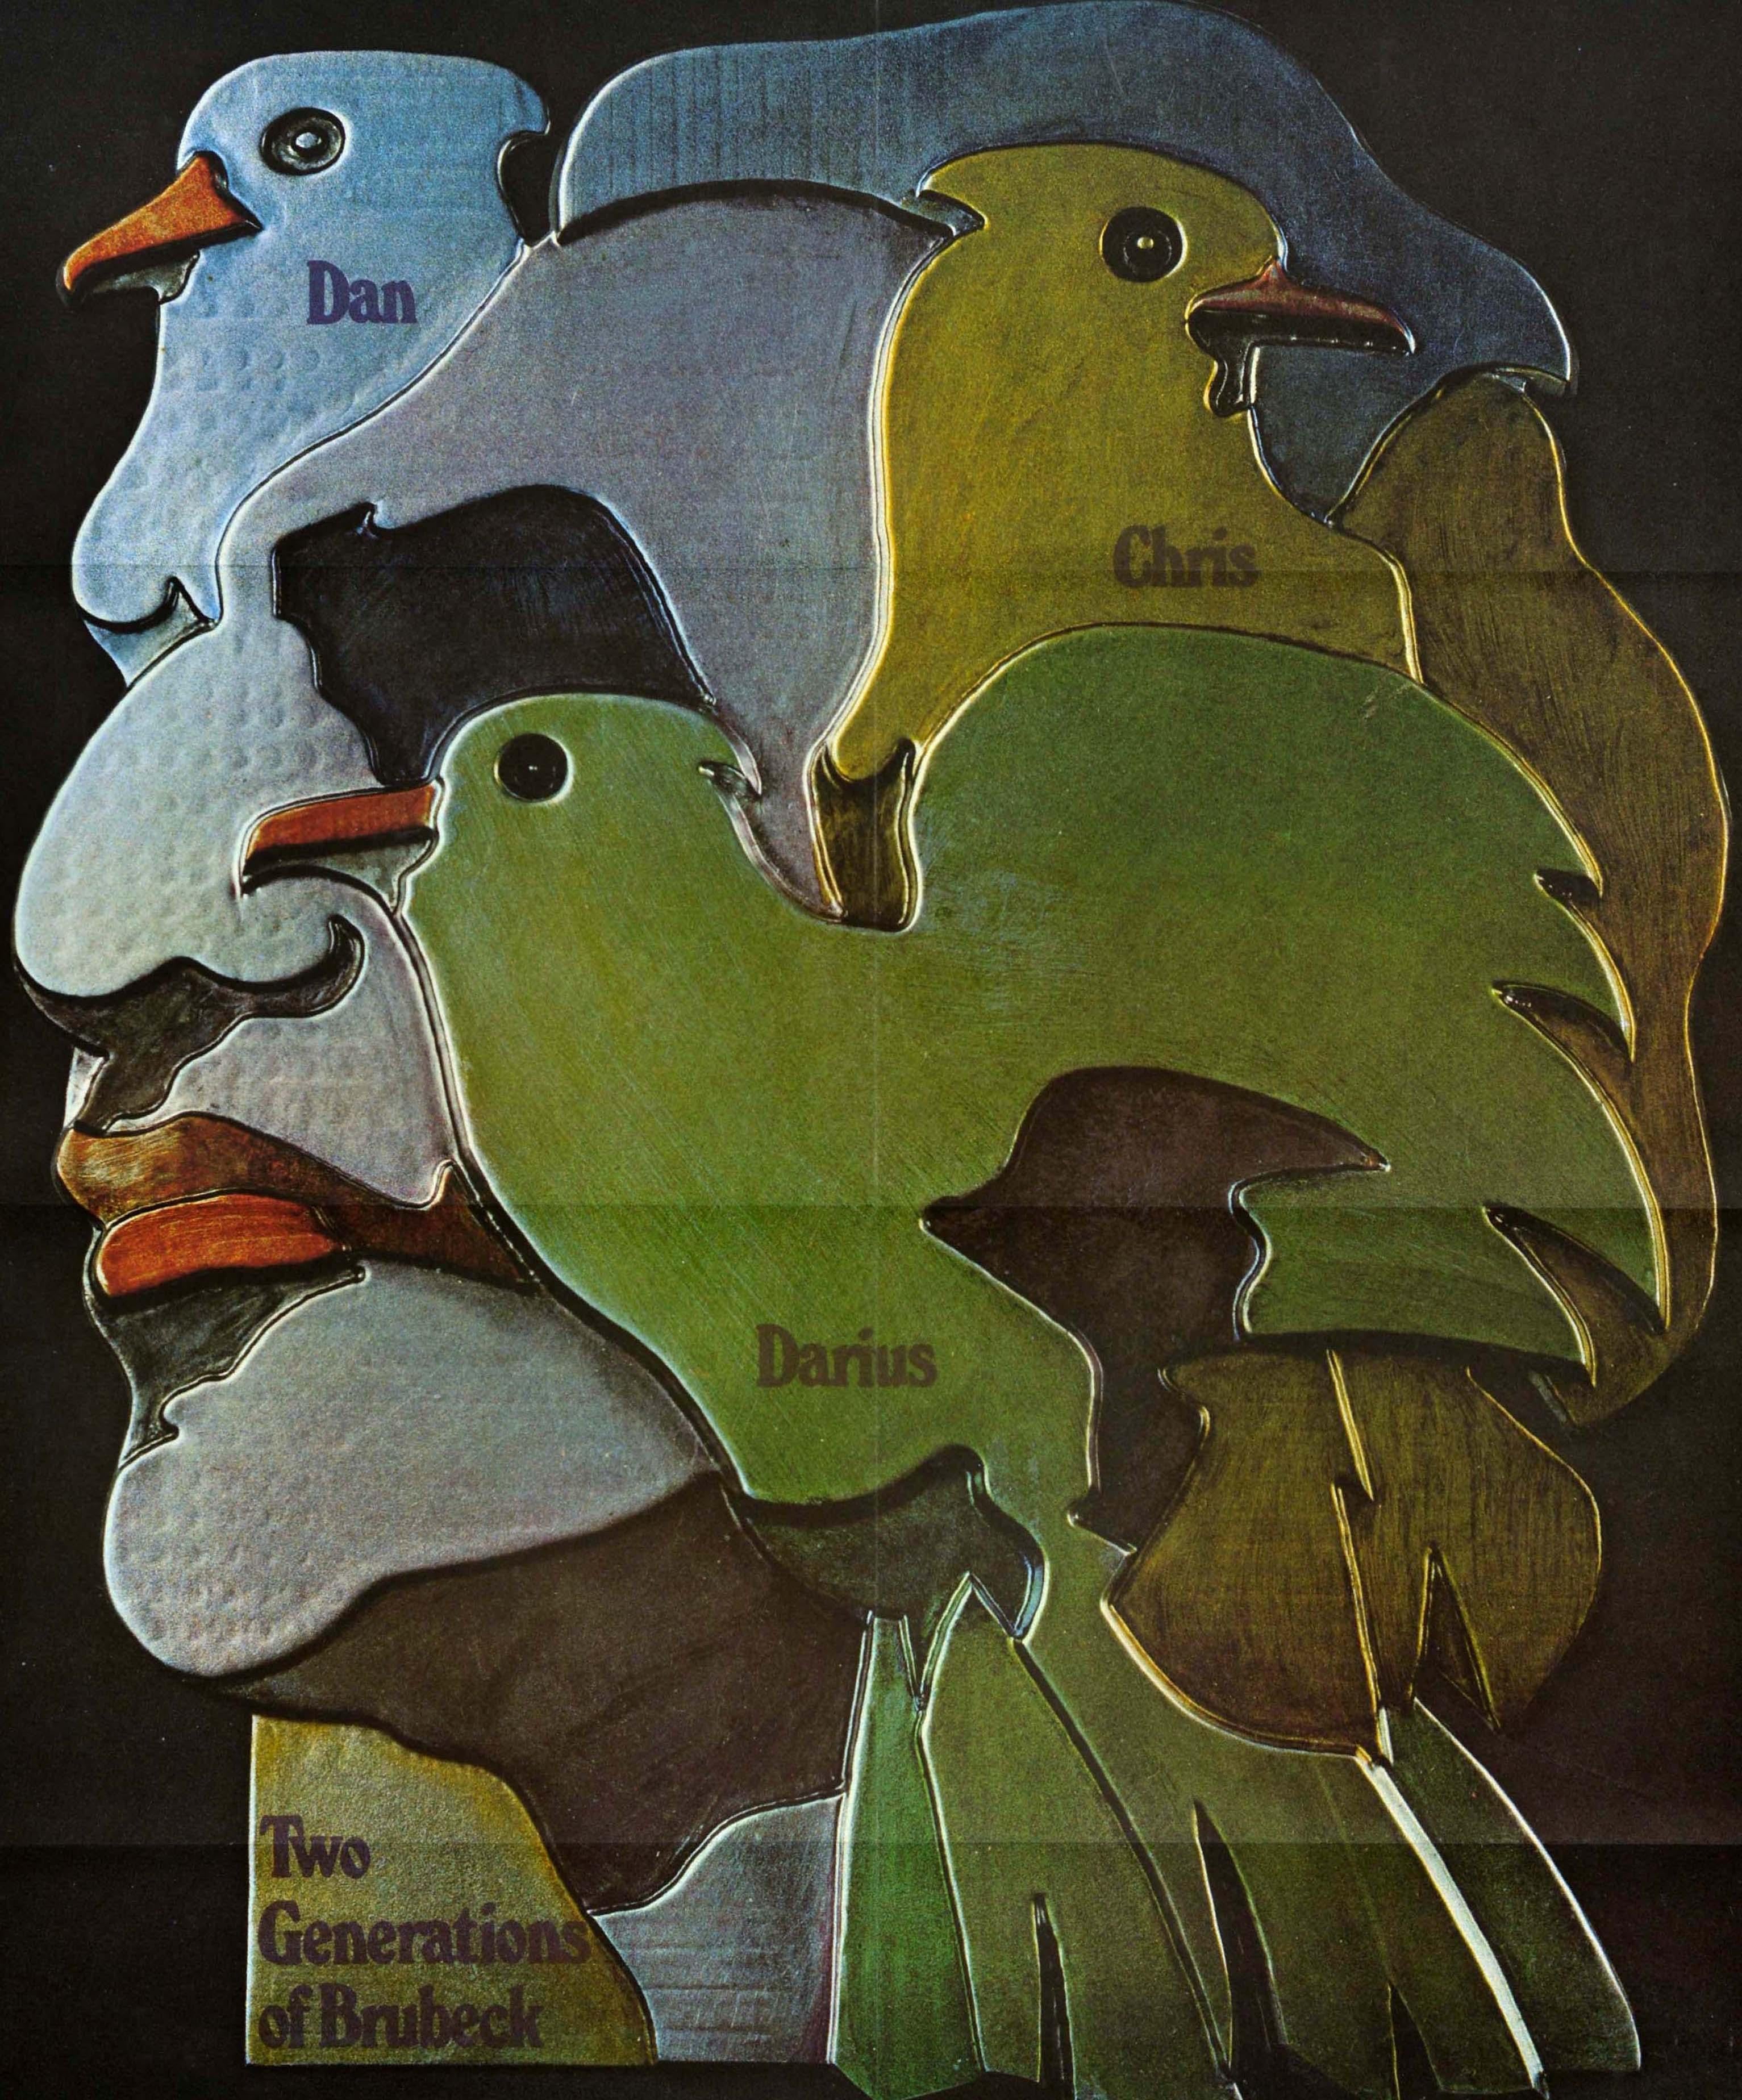 Original-Werbeplakat für Dave Brubeck & Sons Two Generations of Brubeck mit einem stilisierten Bild des Gesichts des berühmten amerikanischen Jazzmusikers, Komponisten und Bandleaders David Brubeck (David Warren Brubeck; 1920-2012), das von Vögeln